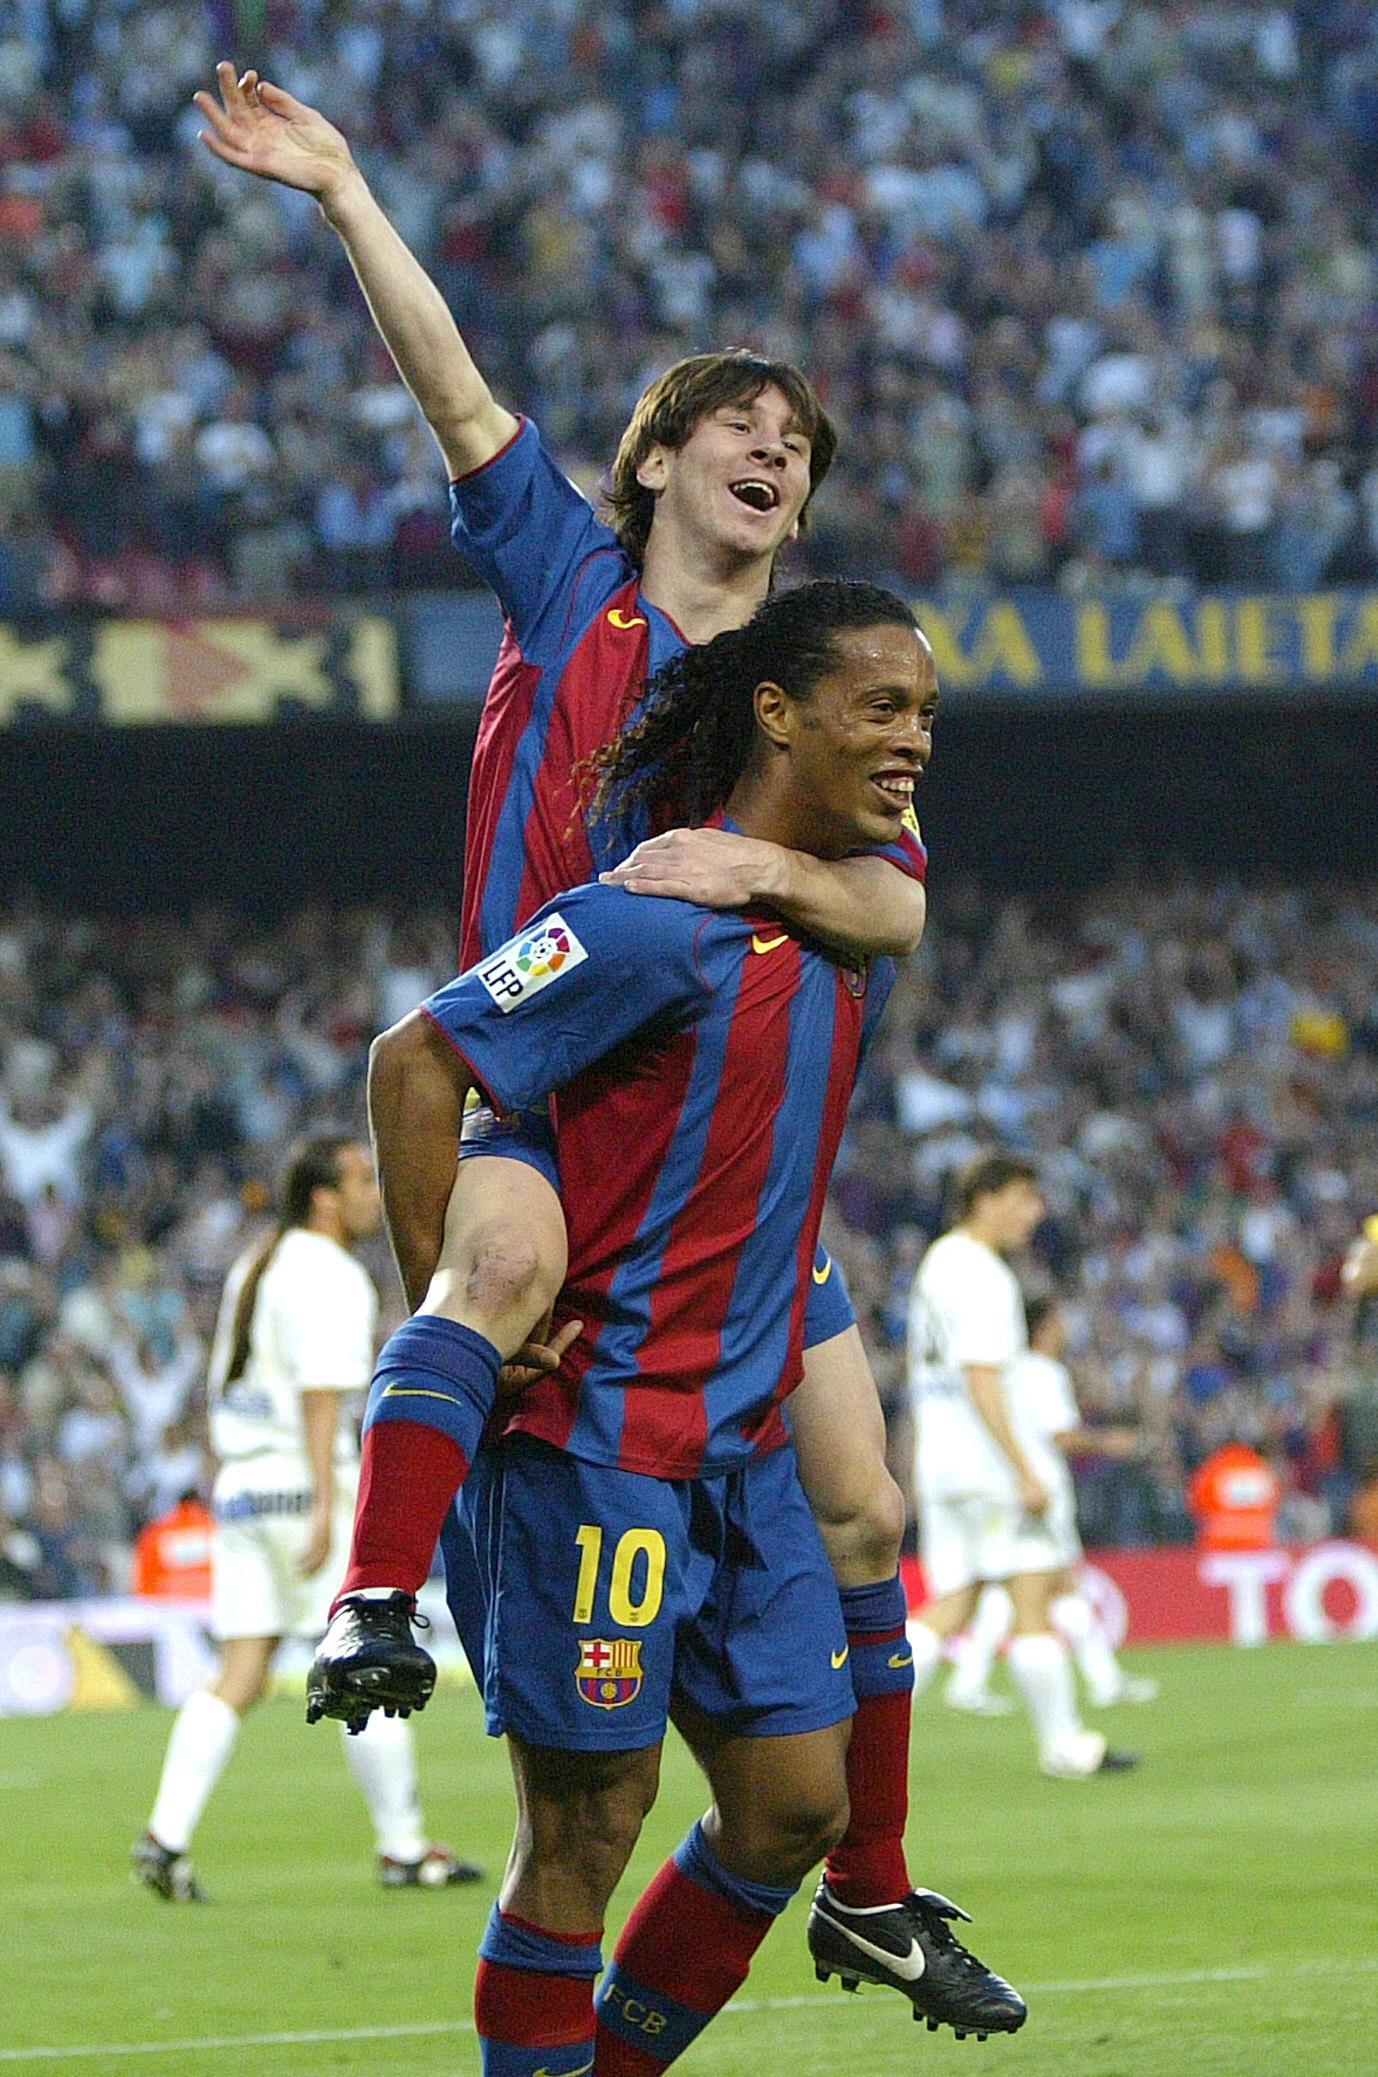 Bộ sưu tập hình nền Messi và Ronaldinho đầy màu sắc và độc đáo này sẽ giúp bạn tạo ra một phong cách riêng cho màn hình điện thoại của mình. Bạn có thể chọn bất kỳ hình ảnh nào mà bạn thích và biến nó thành hình nền của mình.